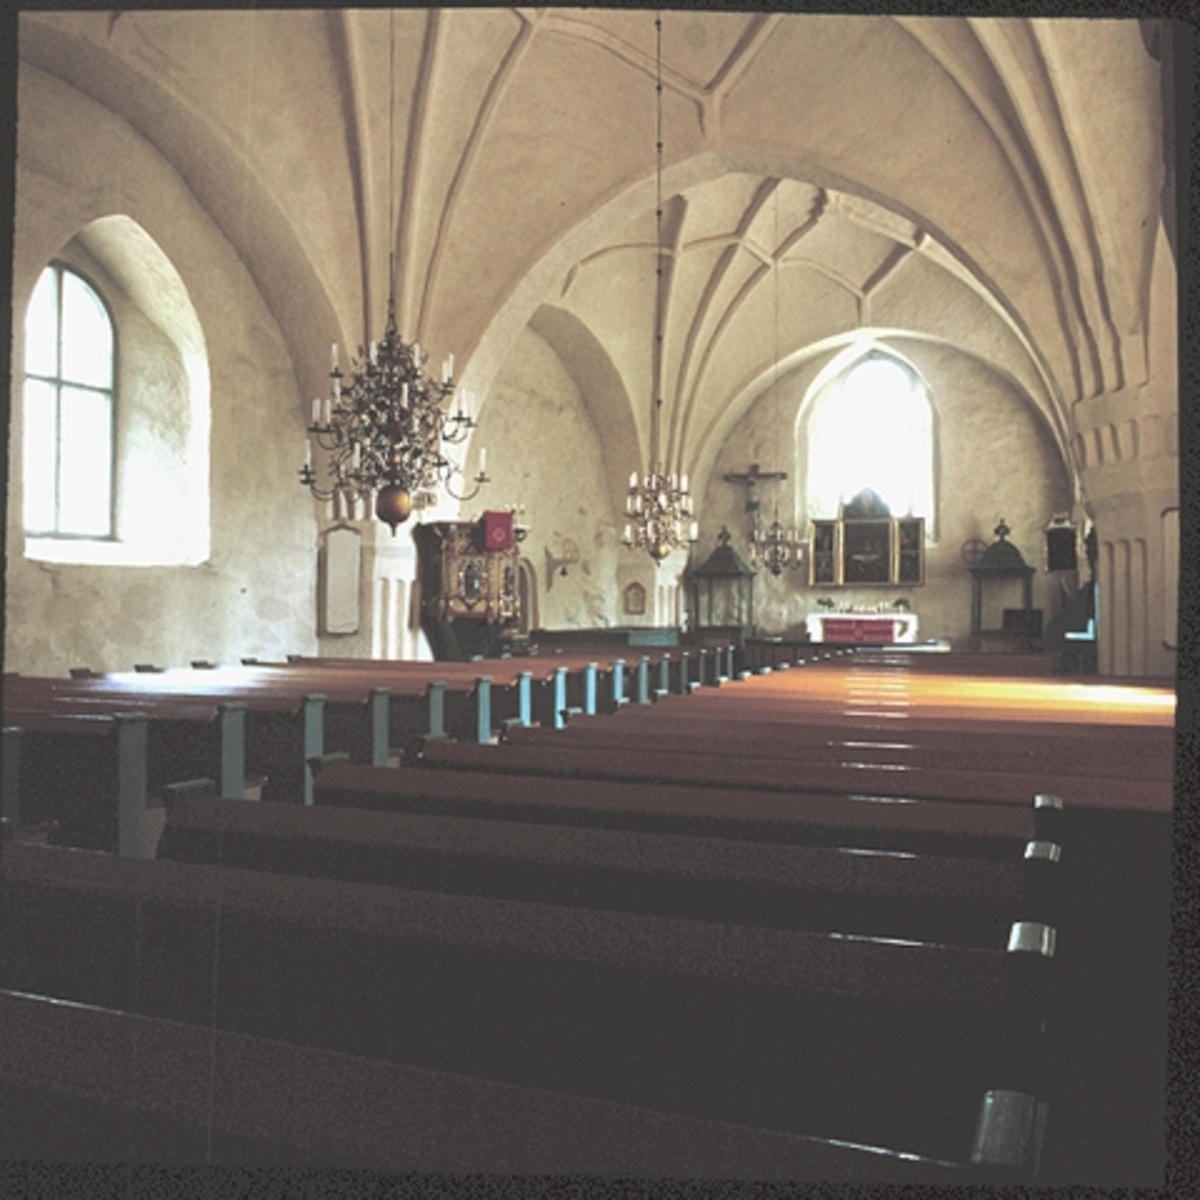 Kuva: Kirkkosali täysgoottilaisine tähtiholveineen kuoriin päin. P.O. Welin